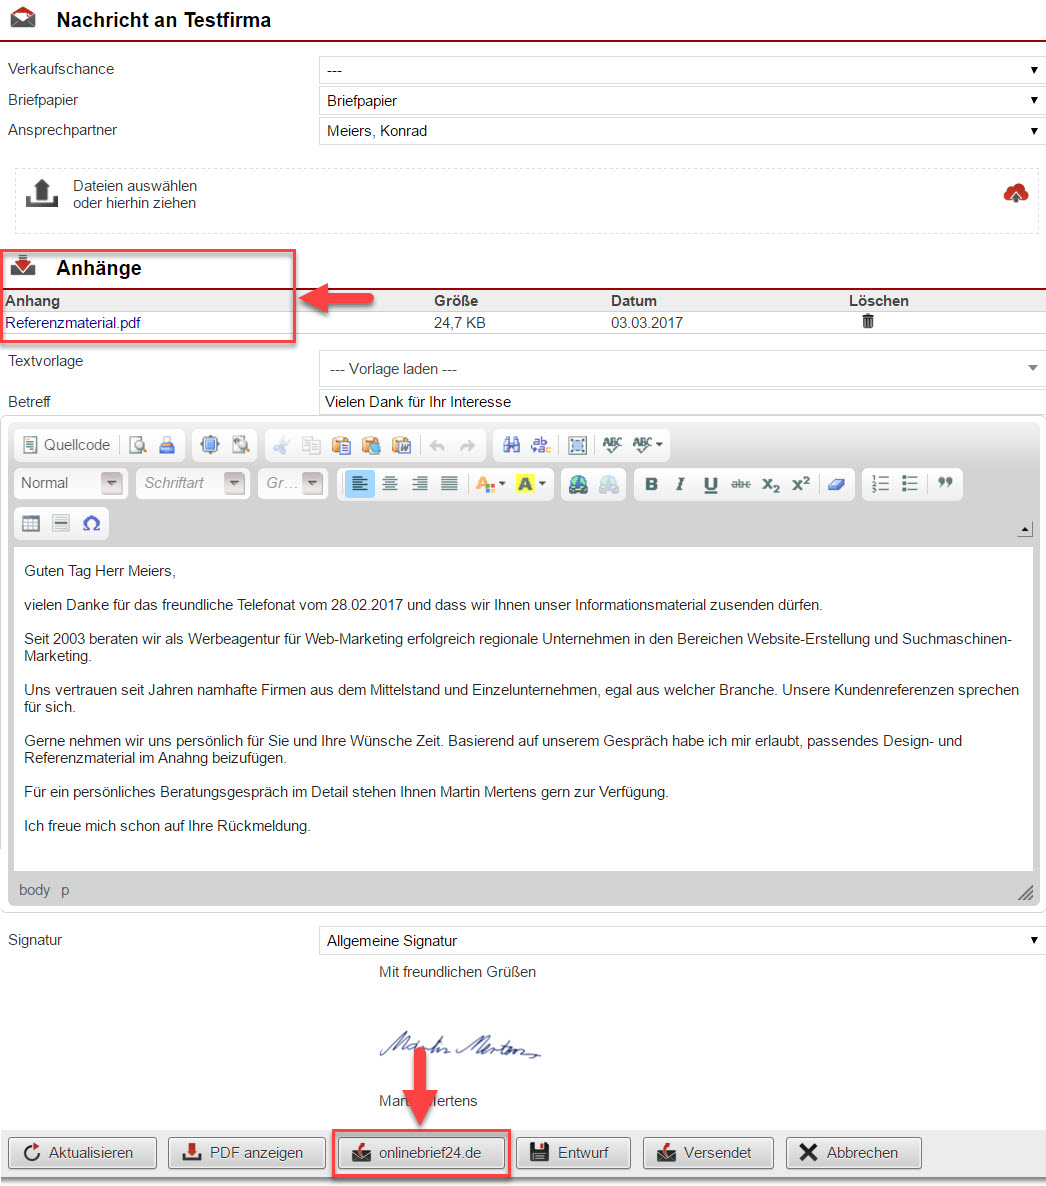 Screenshot Fenster zum Erstellen eines Briefs im AkquiseManager mit Markierungen bei den Anhängen und dem Button zum Versand über Onlinebrief24.de